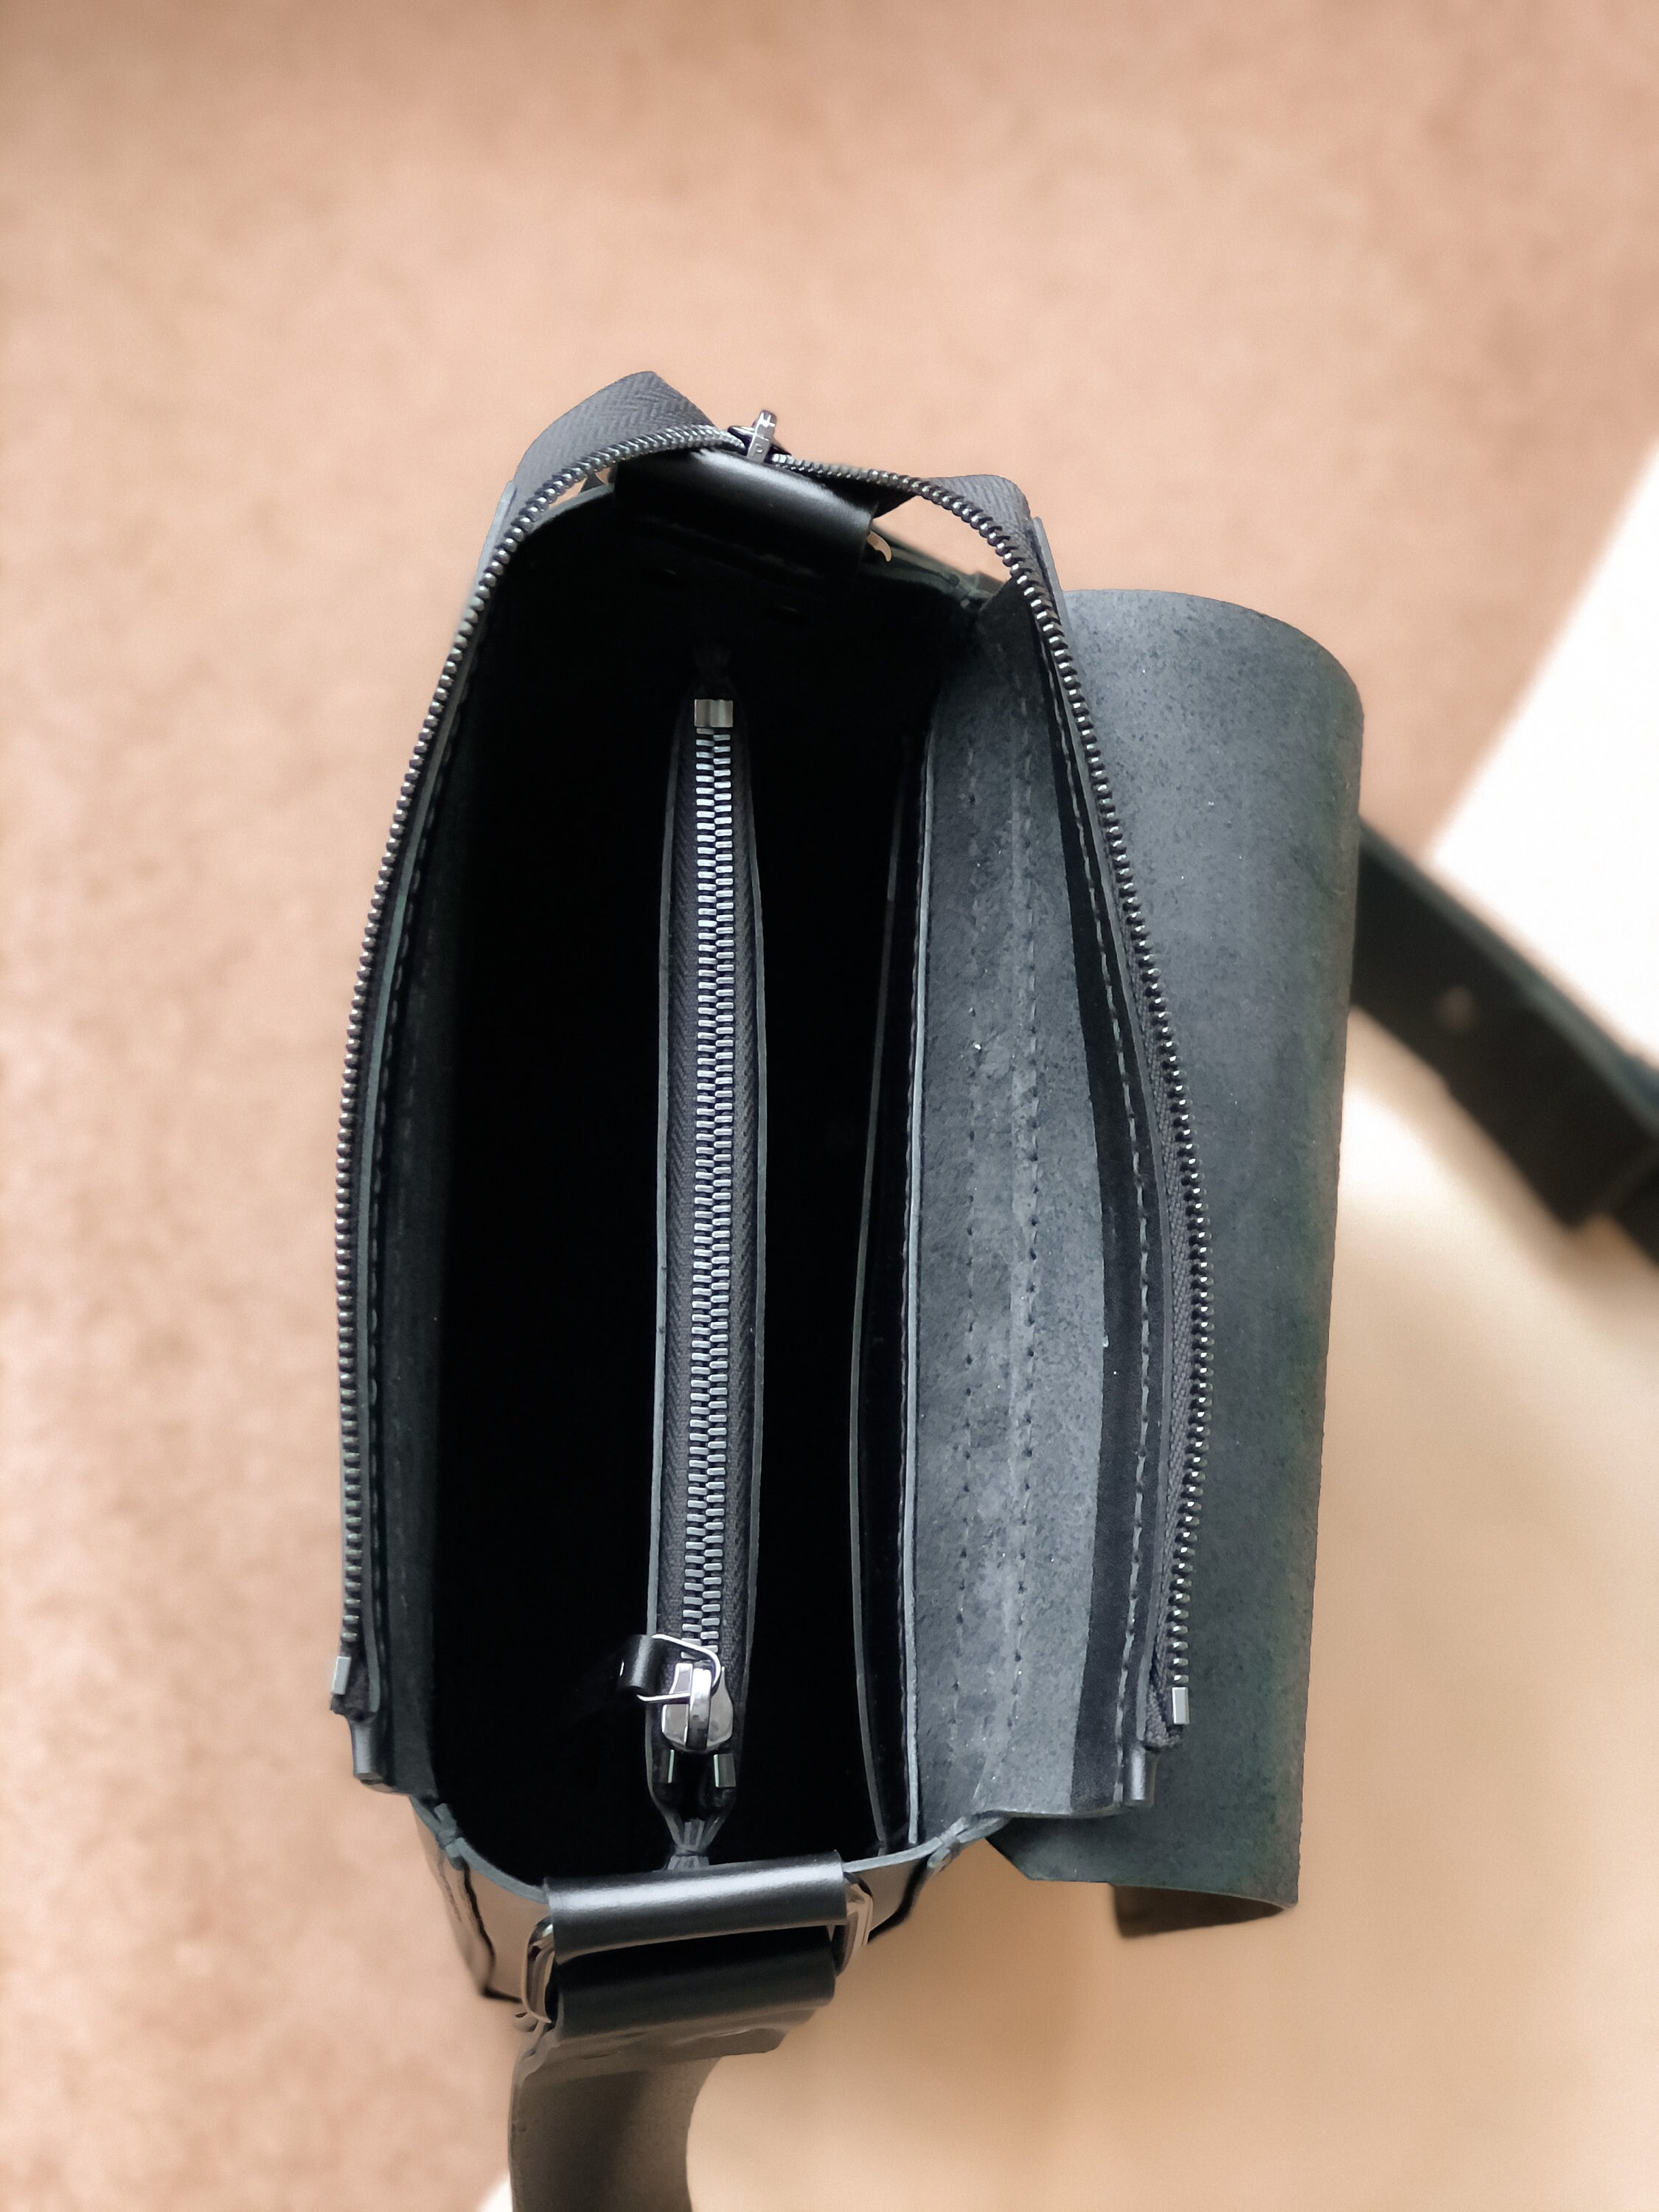 Mini messenger leather bag for men. Small leather shoulder bag | Etsy